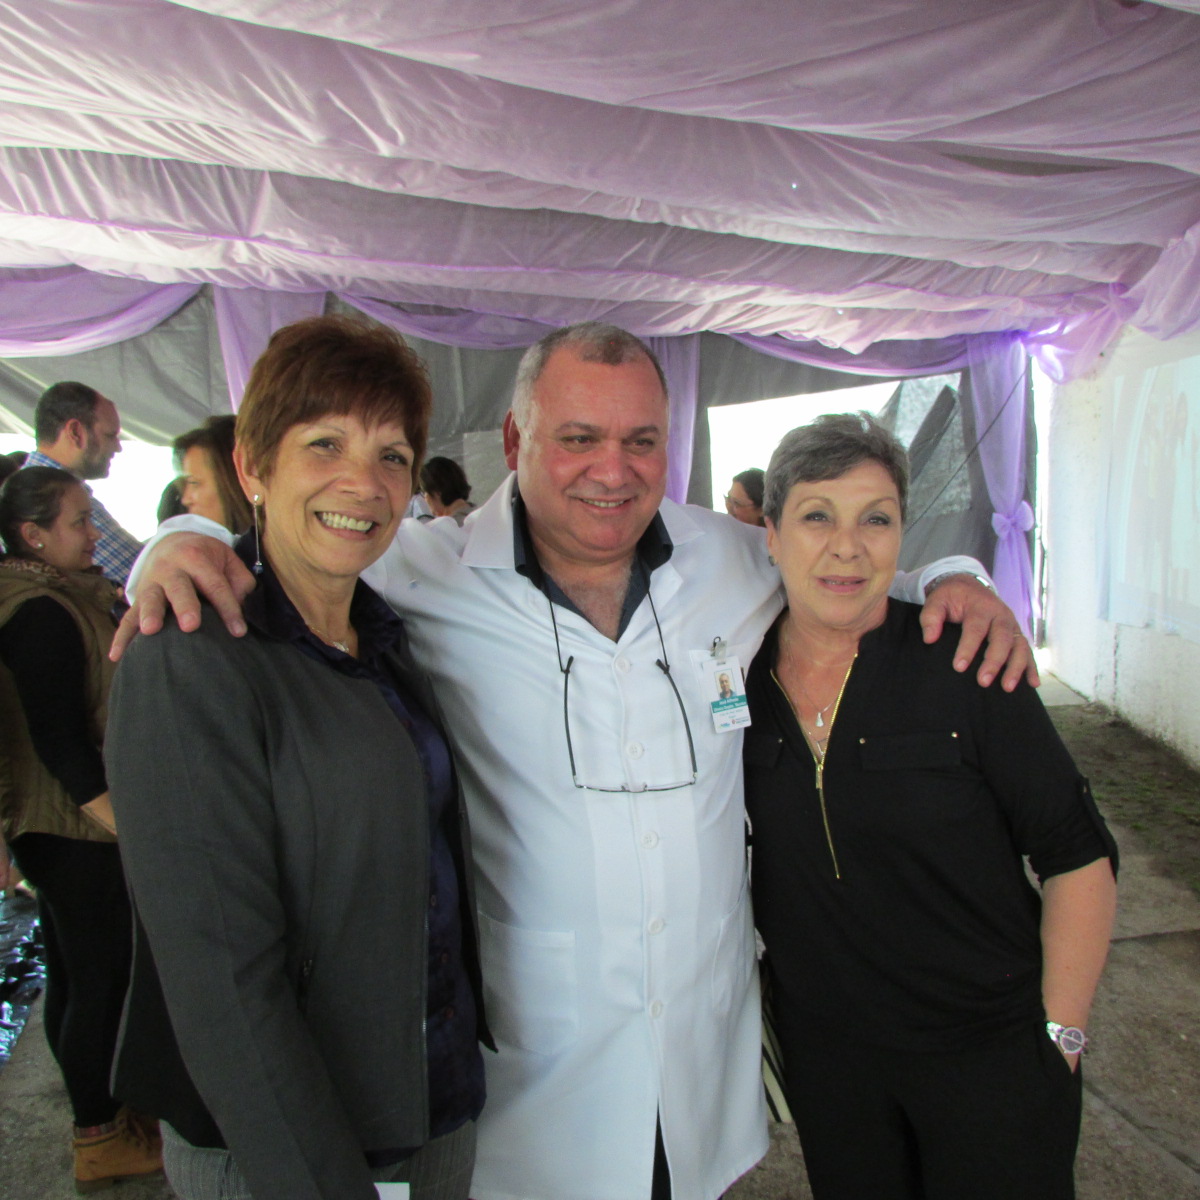 #PraCegoVer da esquerda para a direita: Lourdes Marques, Dr. José AlfredoMartini e Dra. Rina Ferrari Bissolati representando a Autarquia Hospitalar Municipal